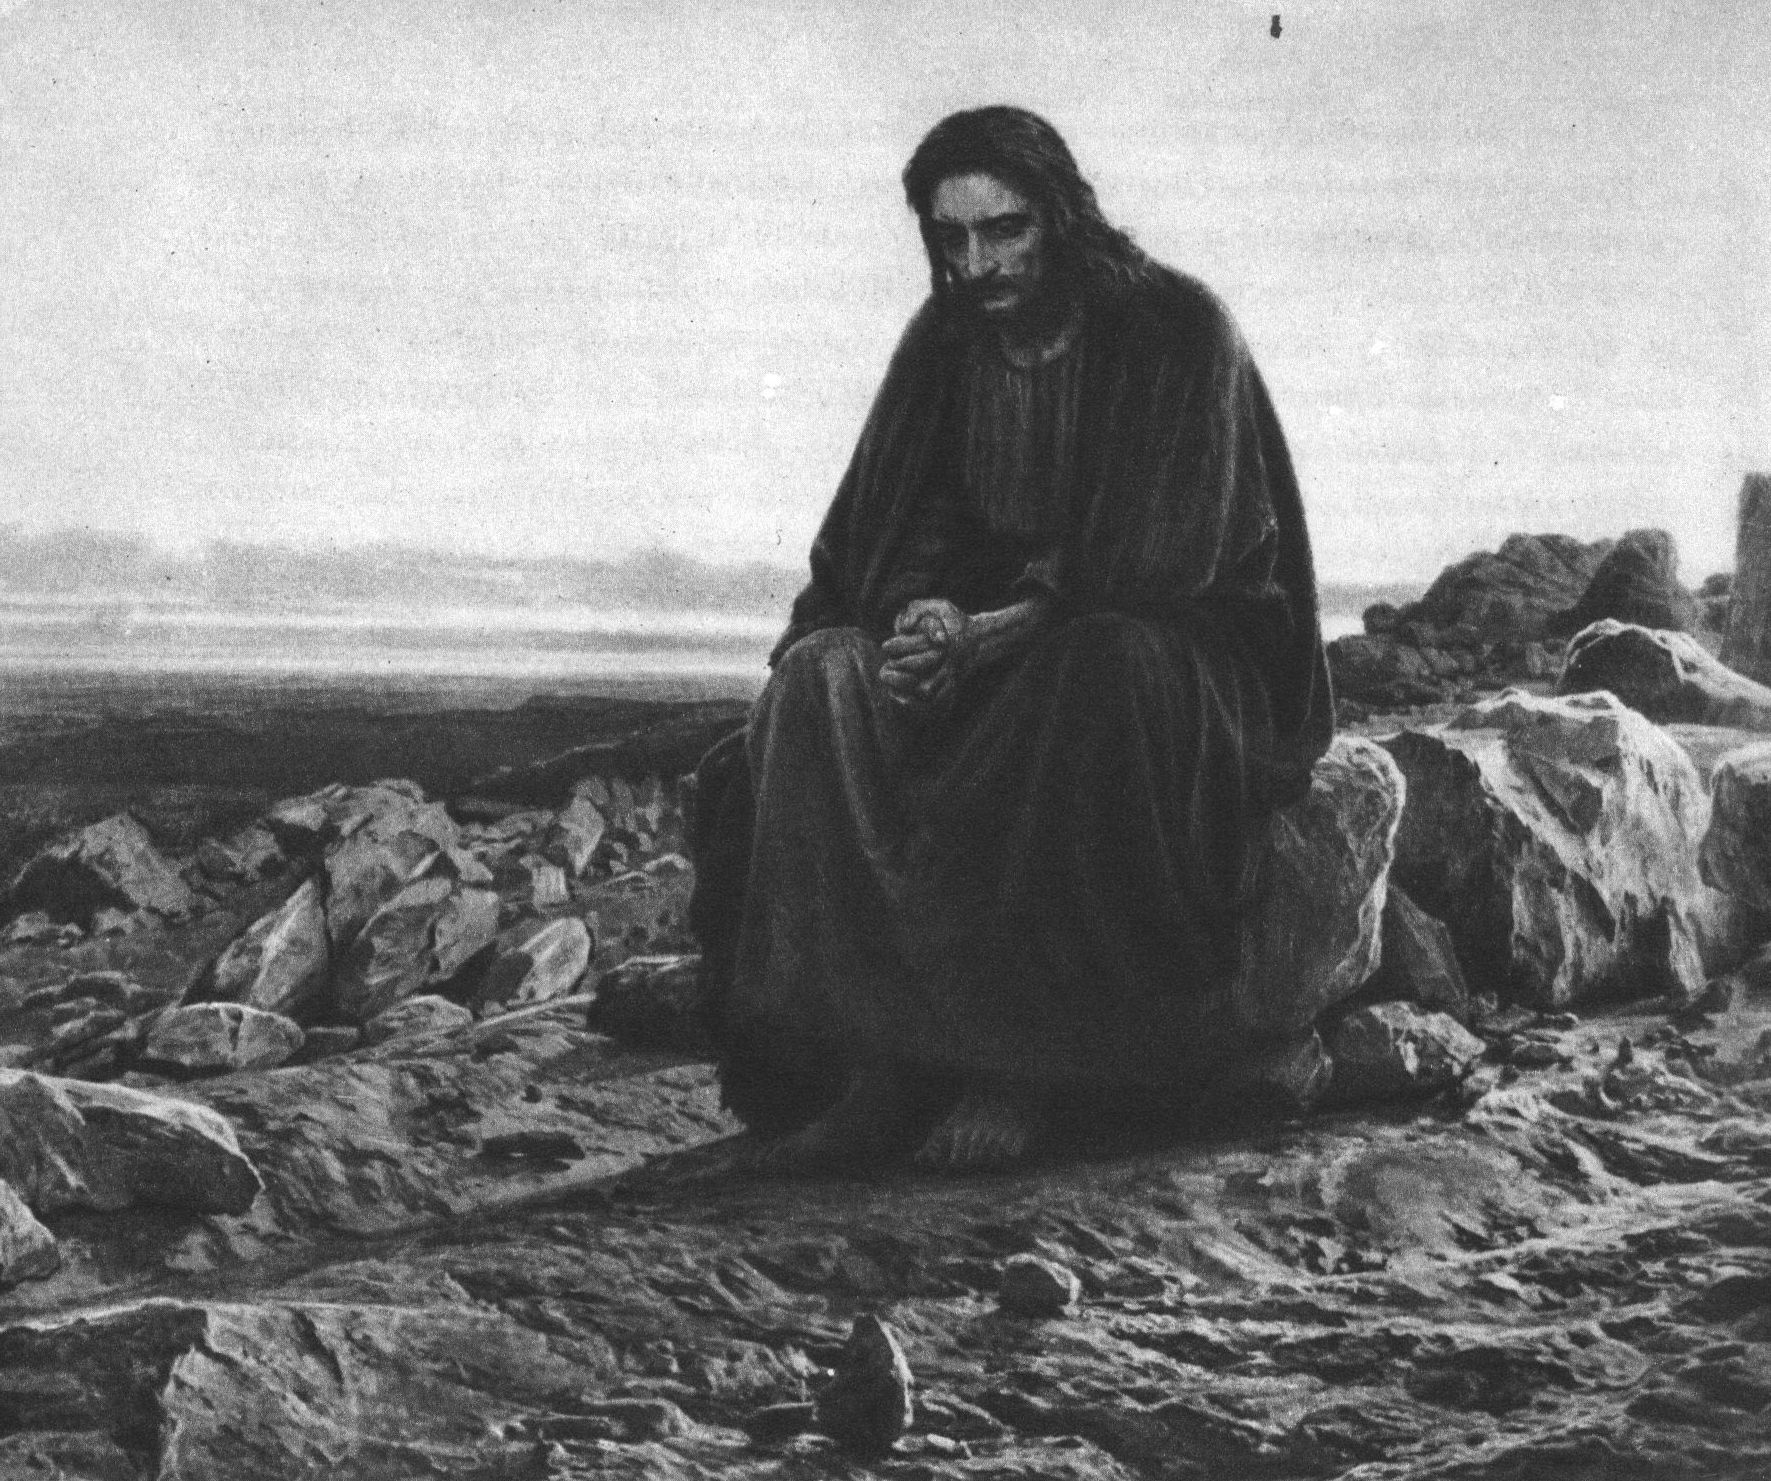 И.Н. Крамской. Христос в пустыне